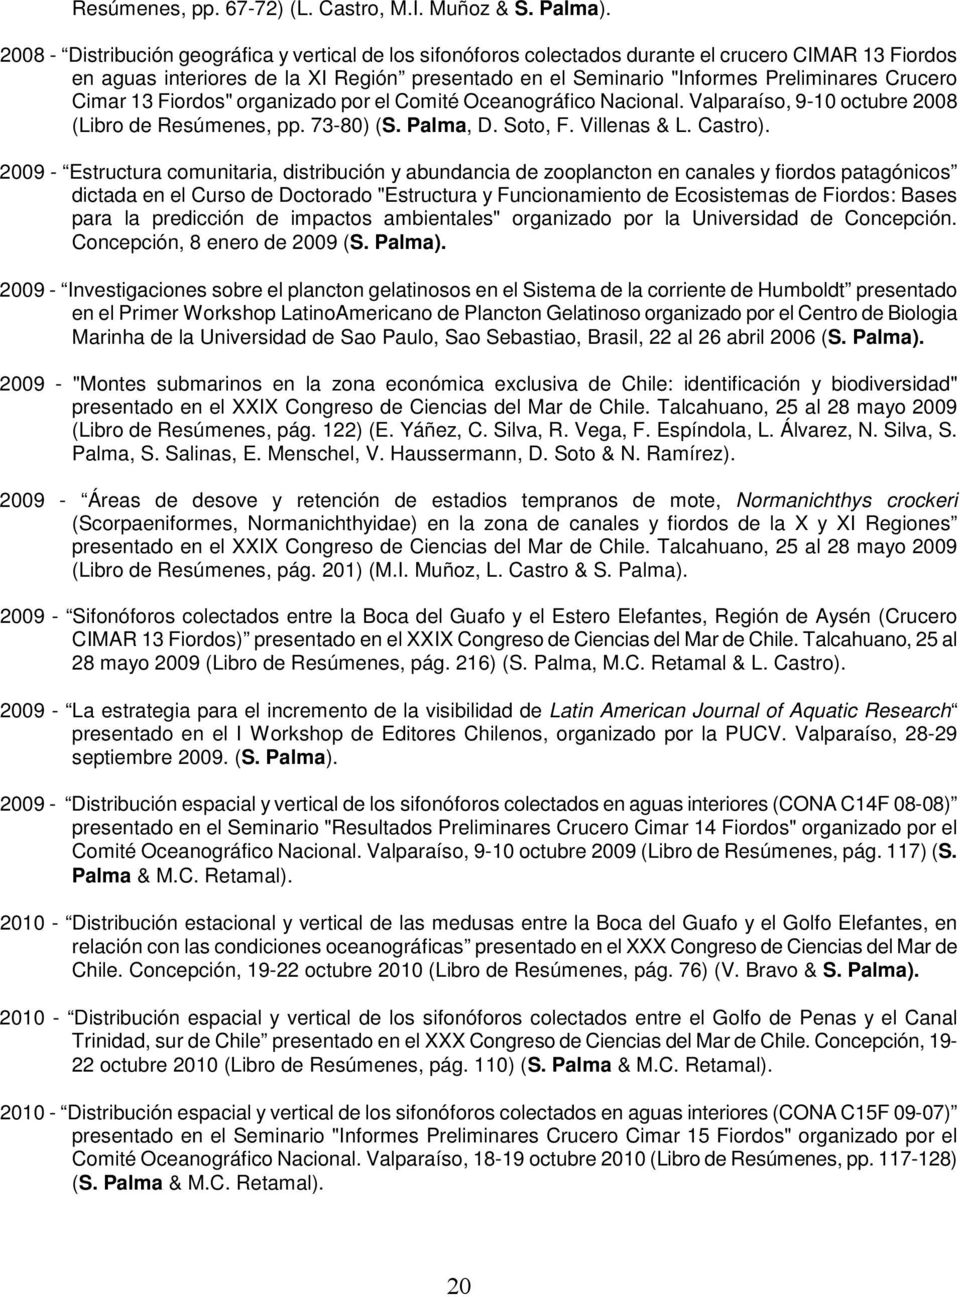 Crucero Cimar 13 Fiordos" organizado por el Comité Oceanográfico Nacional. Valparaíso, 9-10 octubre 2008 (Libro de Resúmenes, pp. 73-80) (S. Palma, D. Soto, F. Villenas & L. Castro).